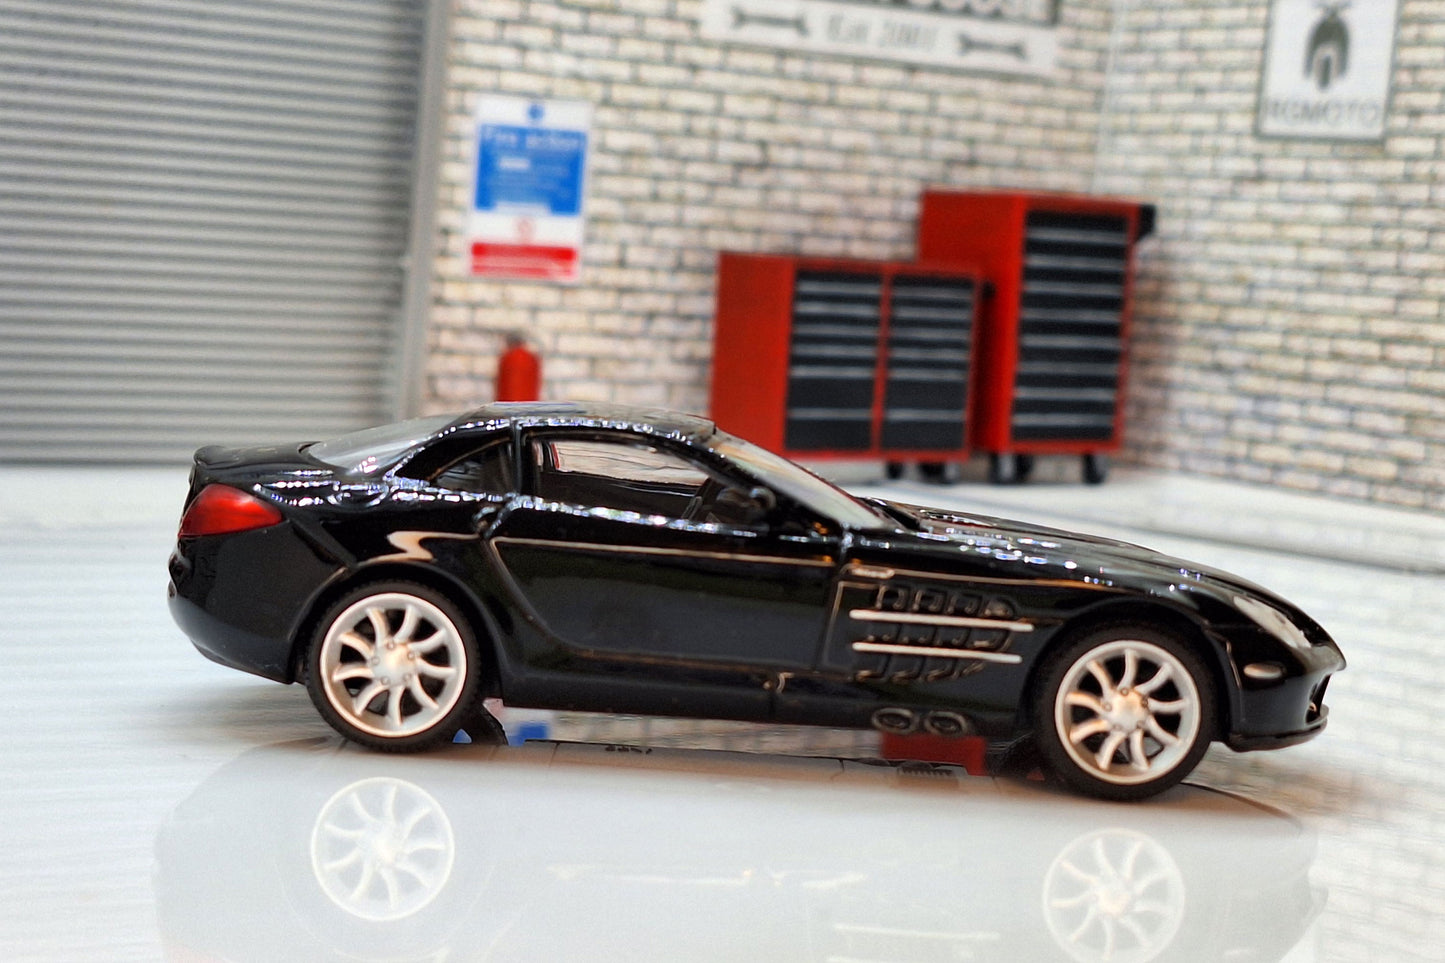 Mercedes Mclaren SLR 1:43 Scale